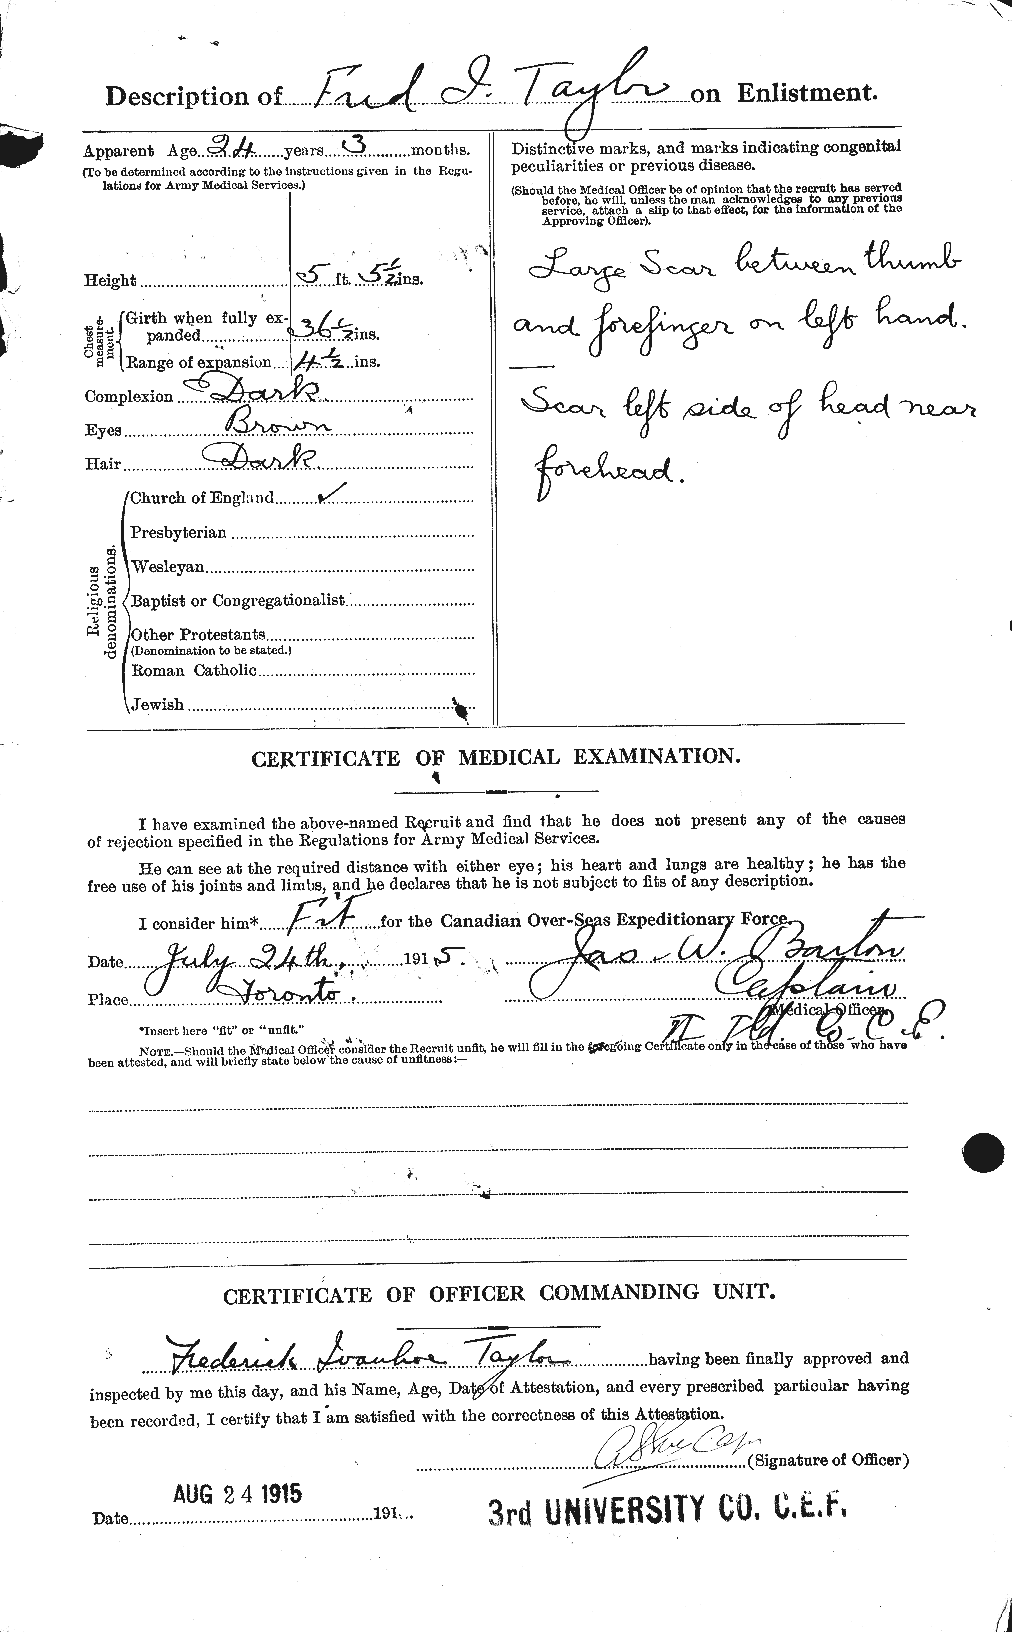 Dossiers du Personnel de la Première Guerre mondiale - CEC 625807b